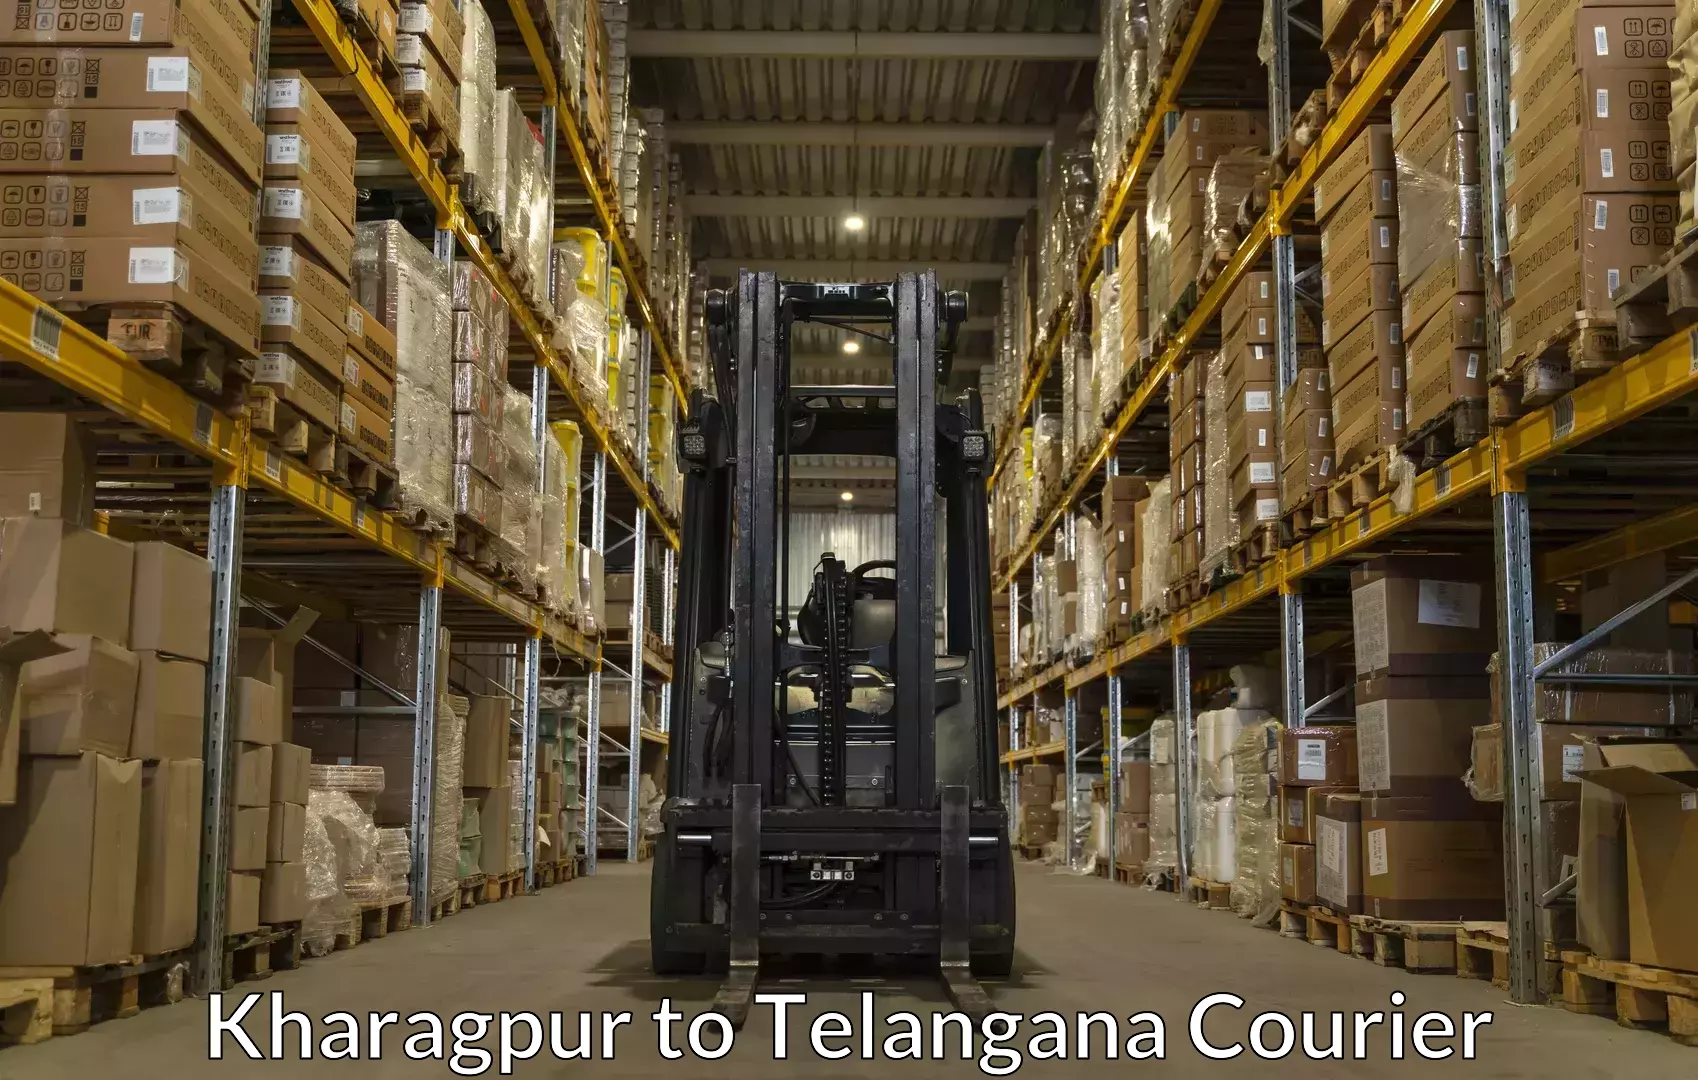 Baggage shipping experts Kharagpur to Telangana